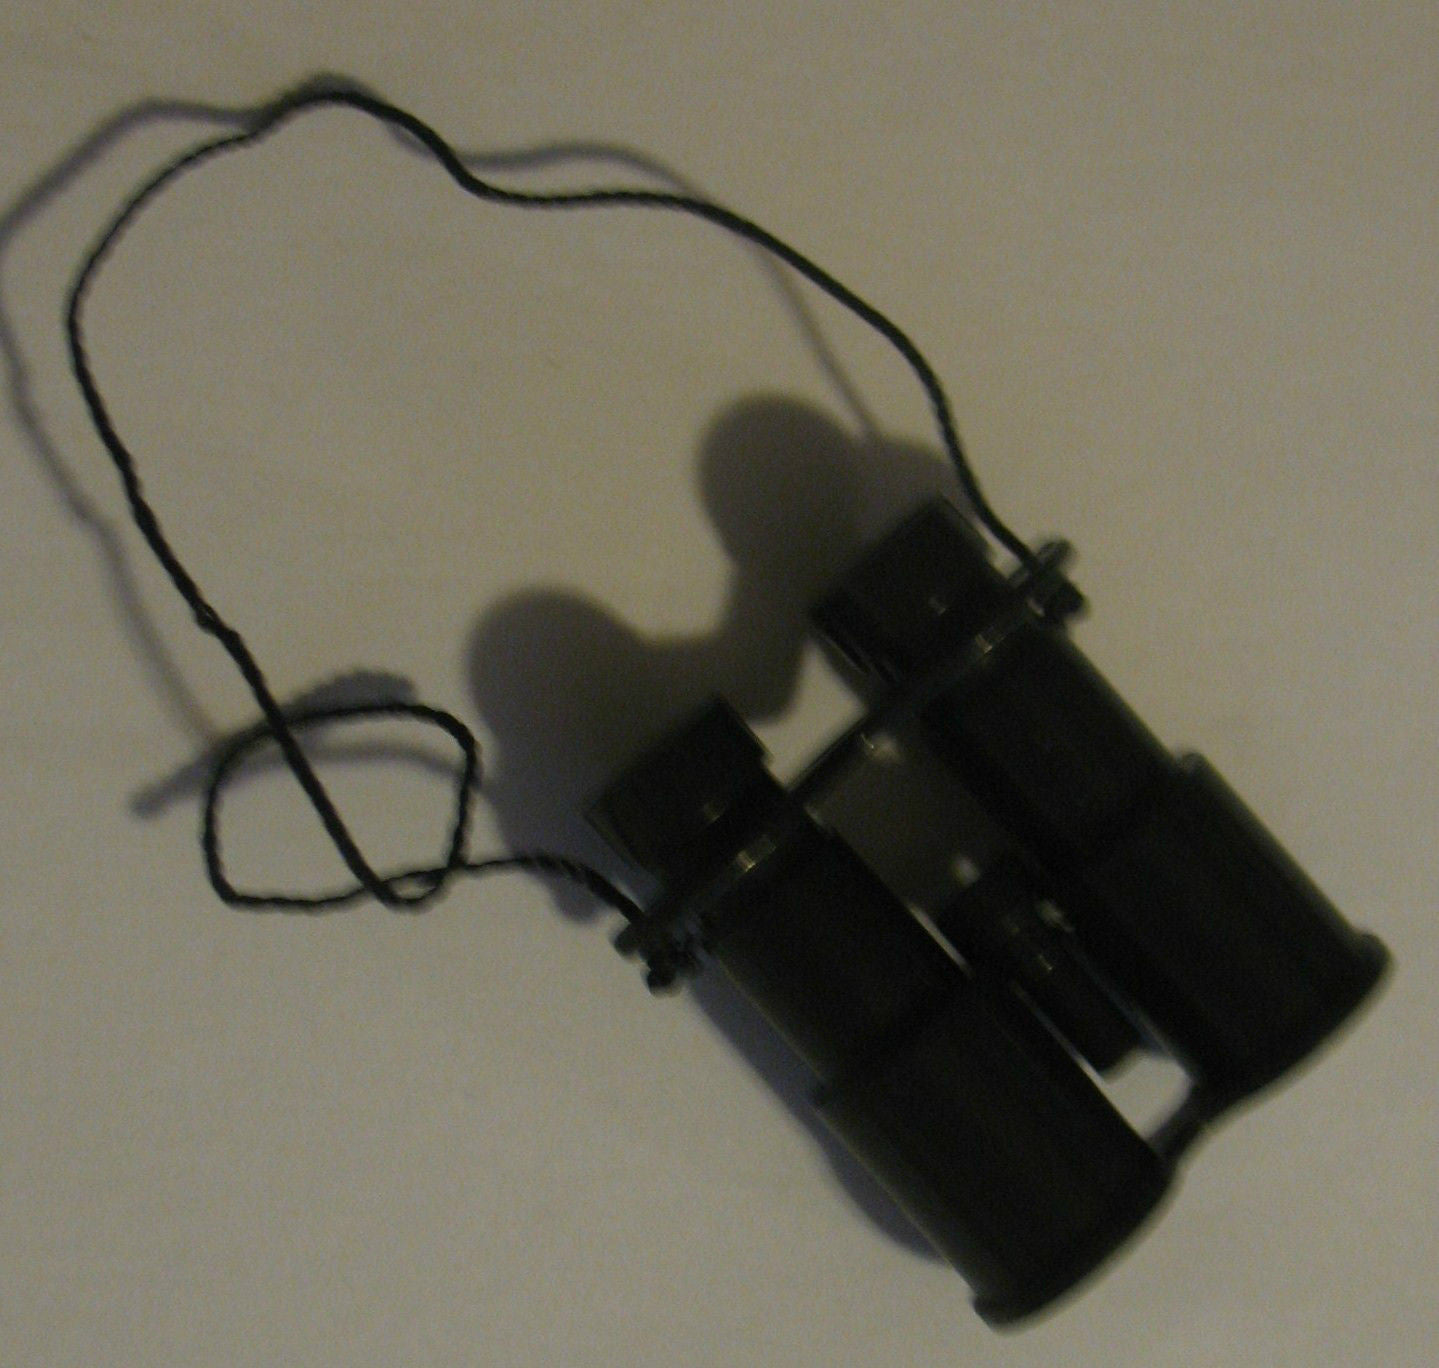 A016 GI Joe HASBRO black binoculars brand new unused!